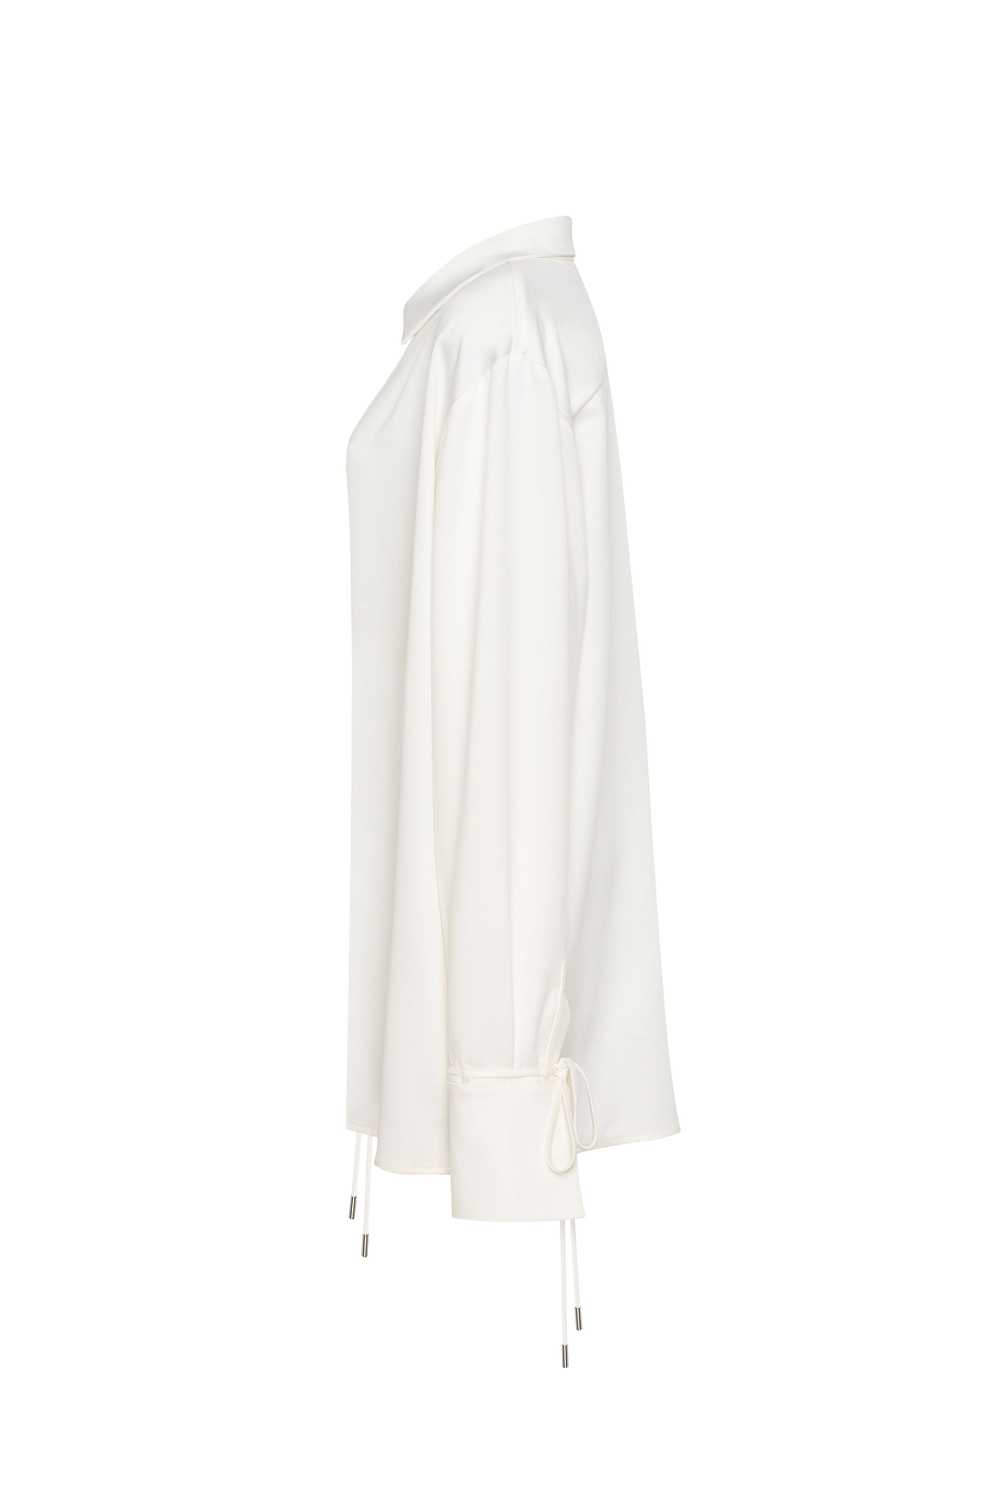 Milla Front-tie satin blouse in white, Xo Xo - image 5